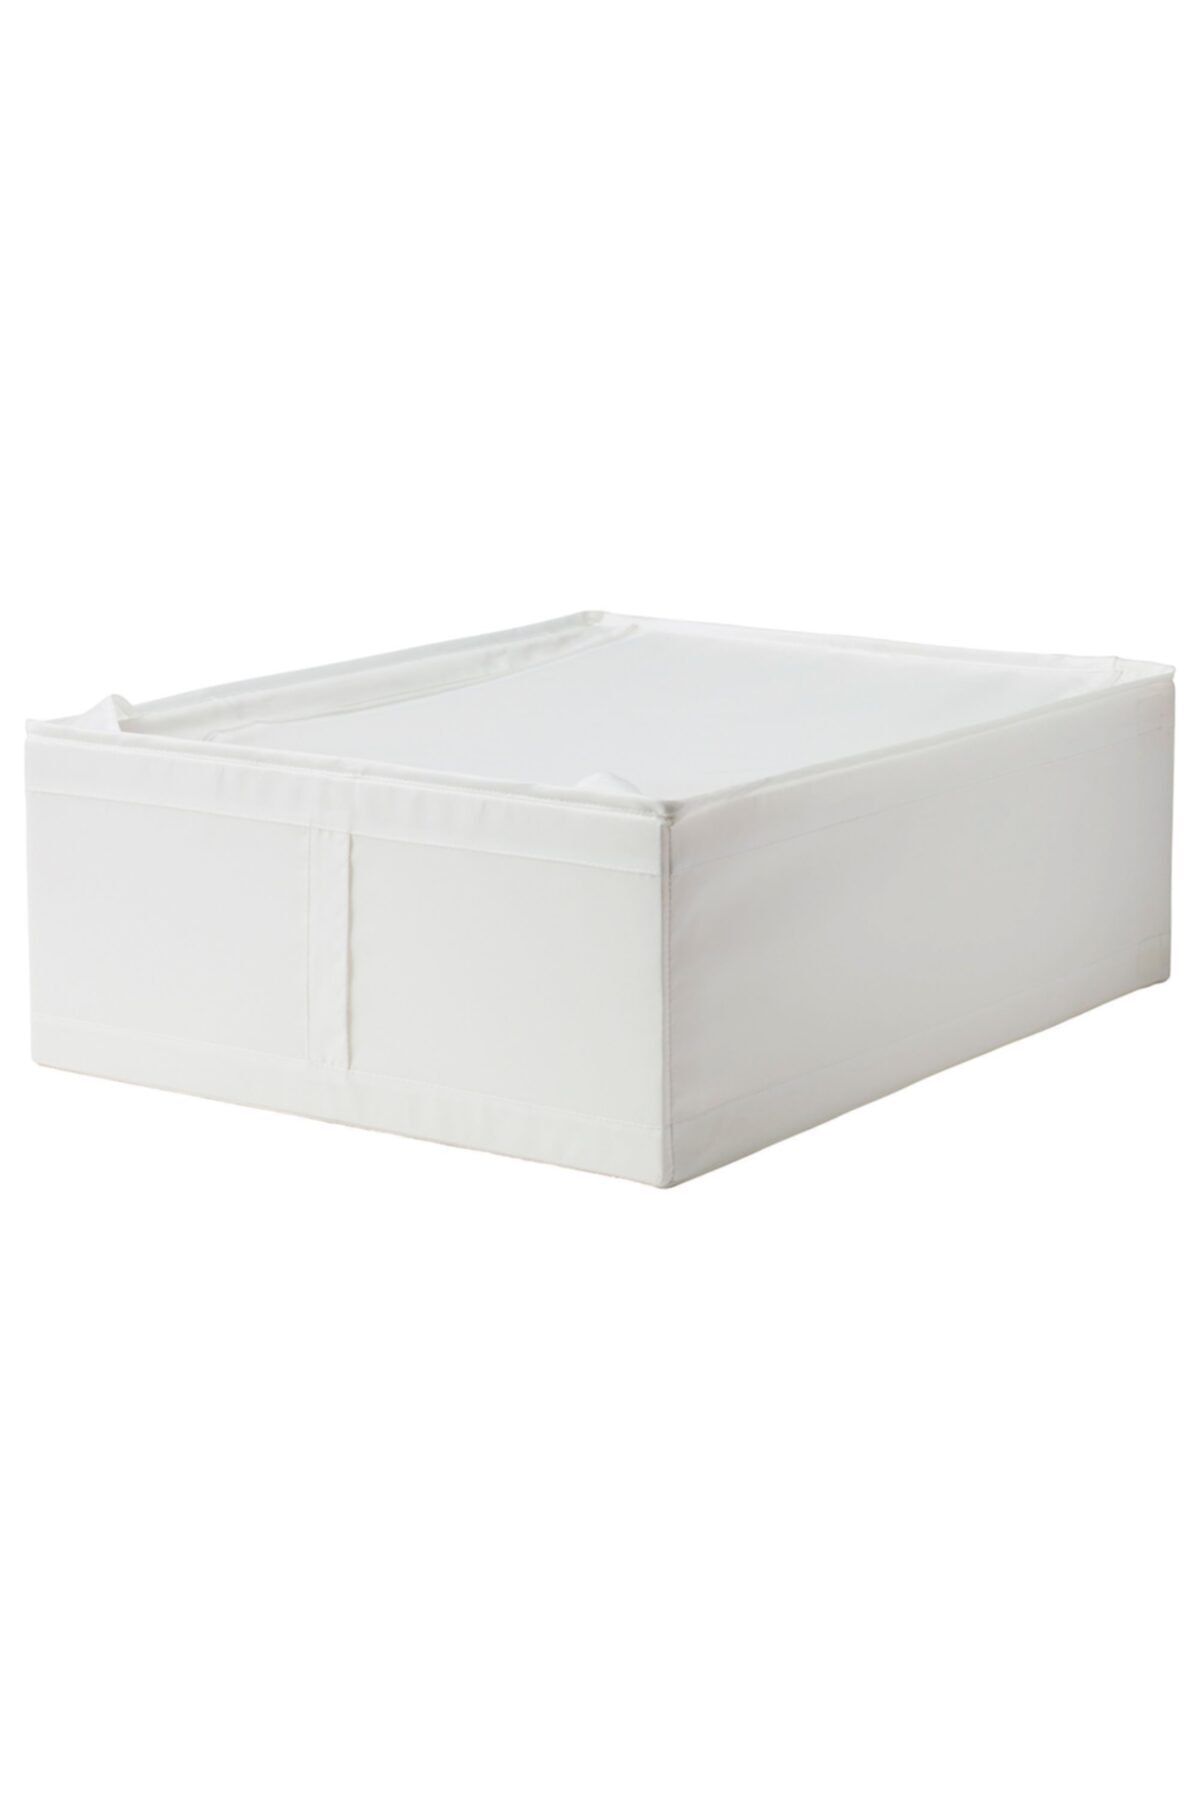 IKEA Katlanabilir Saklama Kutusu Hurç Ölçü 69x55x19 Cm Meridyendukkan Beyaz-düzenleme Kutusu